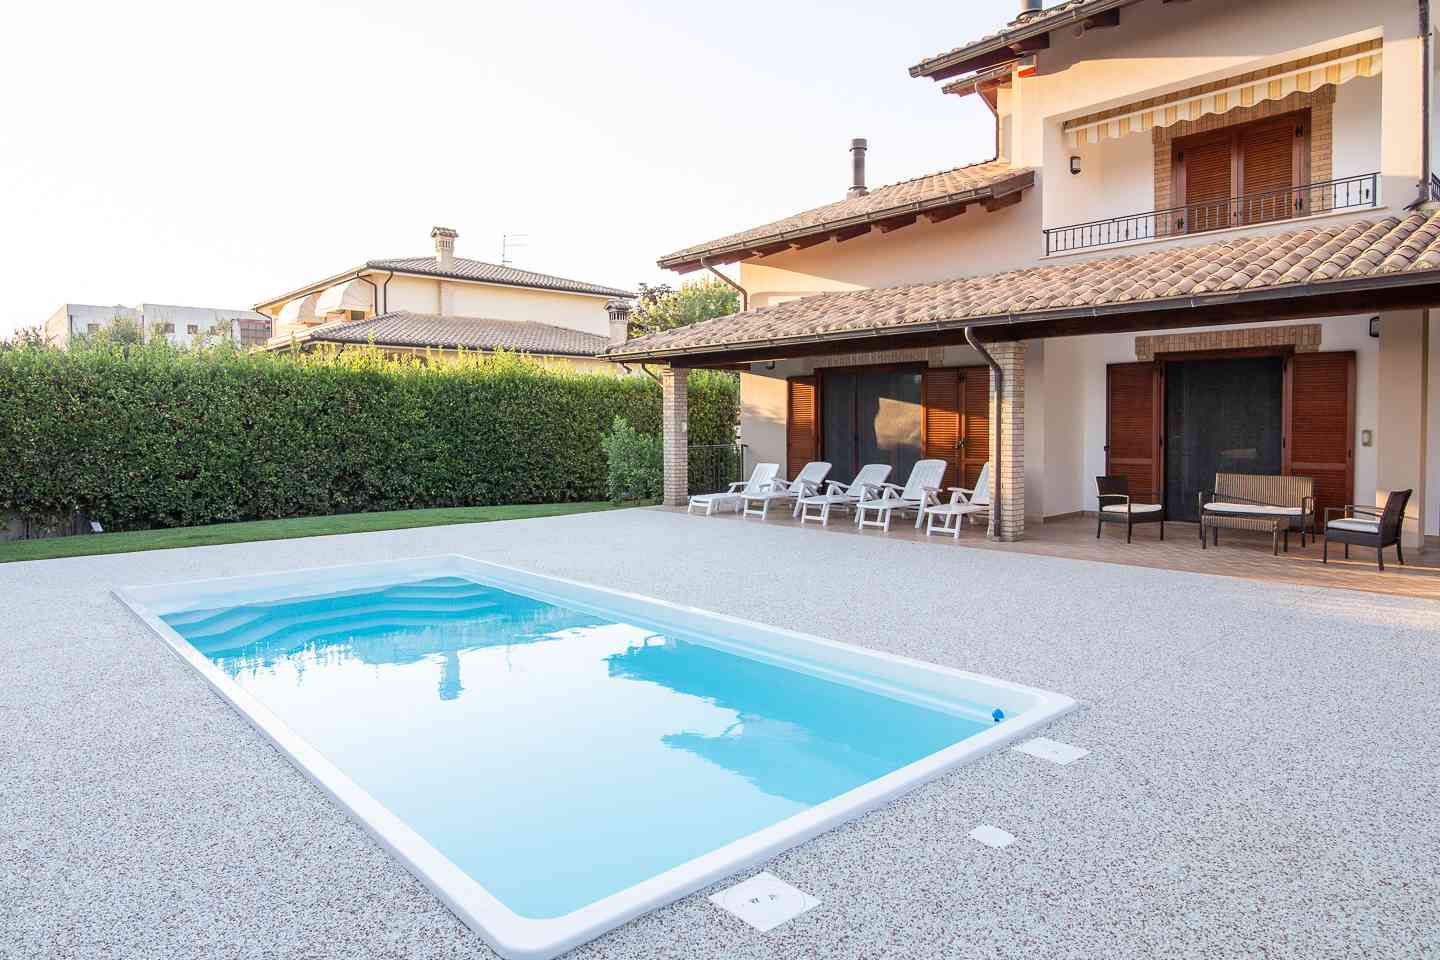 Casa indipendente Casa indipendente in vendita Collecorvino (PE), Villa Pini - Collecorvino - EUR 574.653 420 small